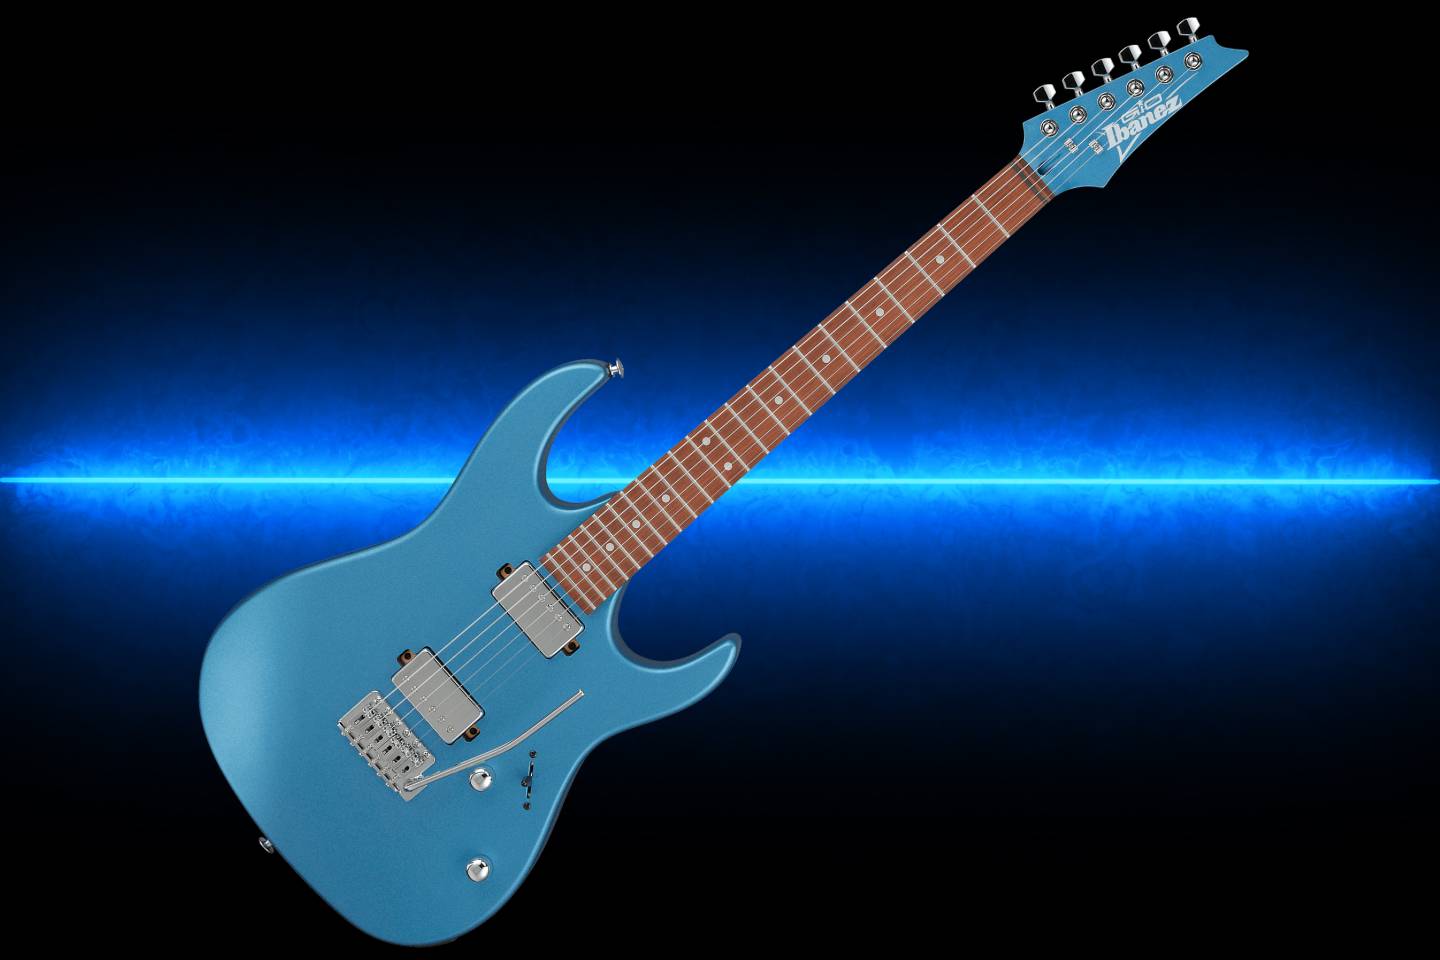 Review Completo da Guitarra Ibanez GRX120SP